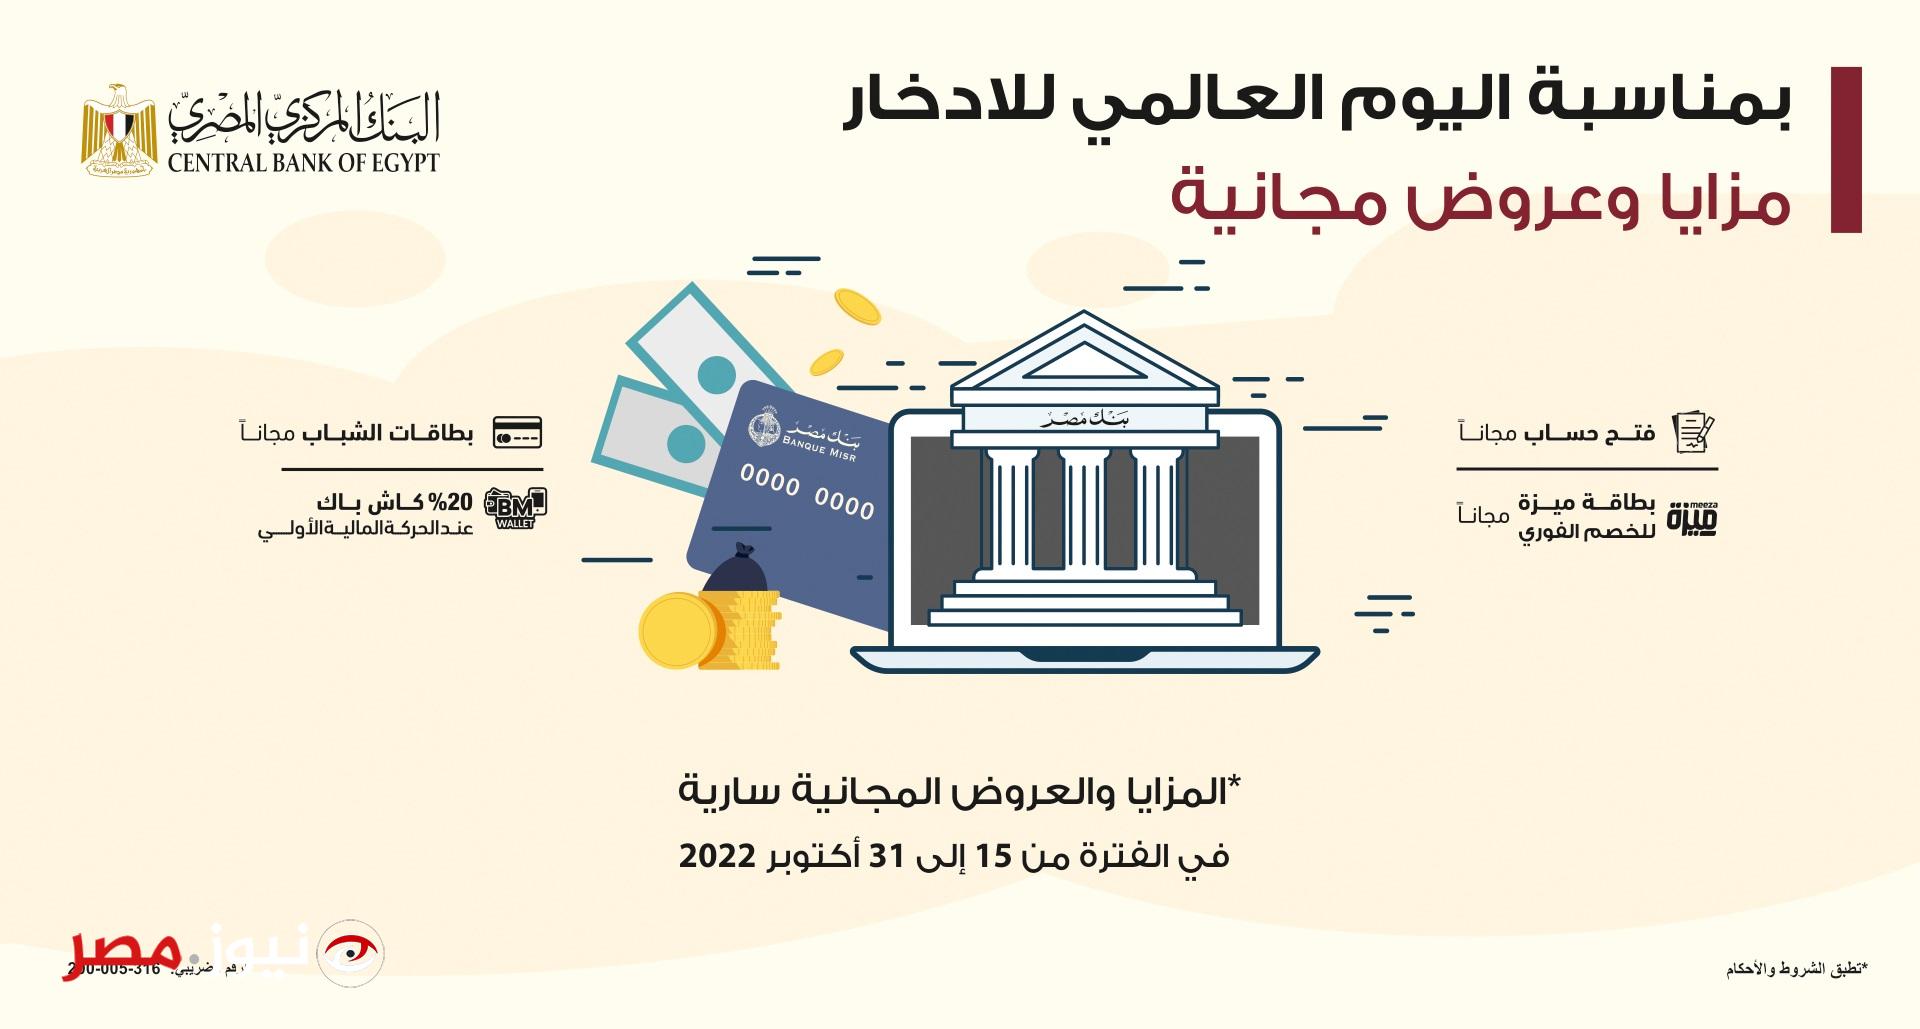 خدمات مجانية في جميع البنوك المصرية احتفالا بيوم الشمول المالي